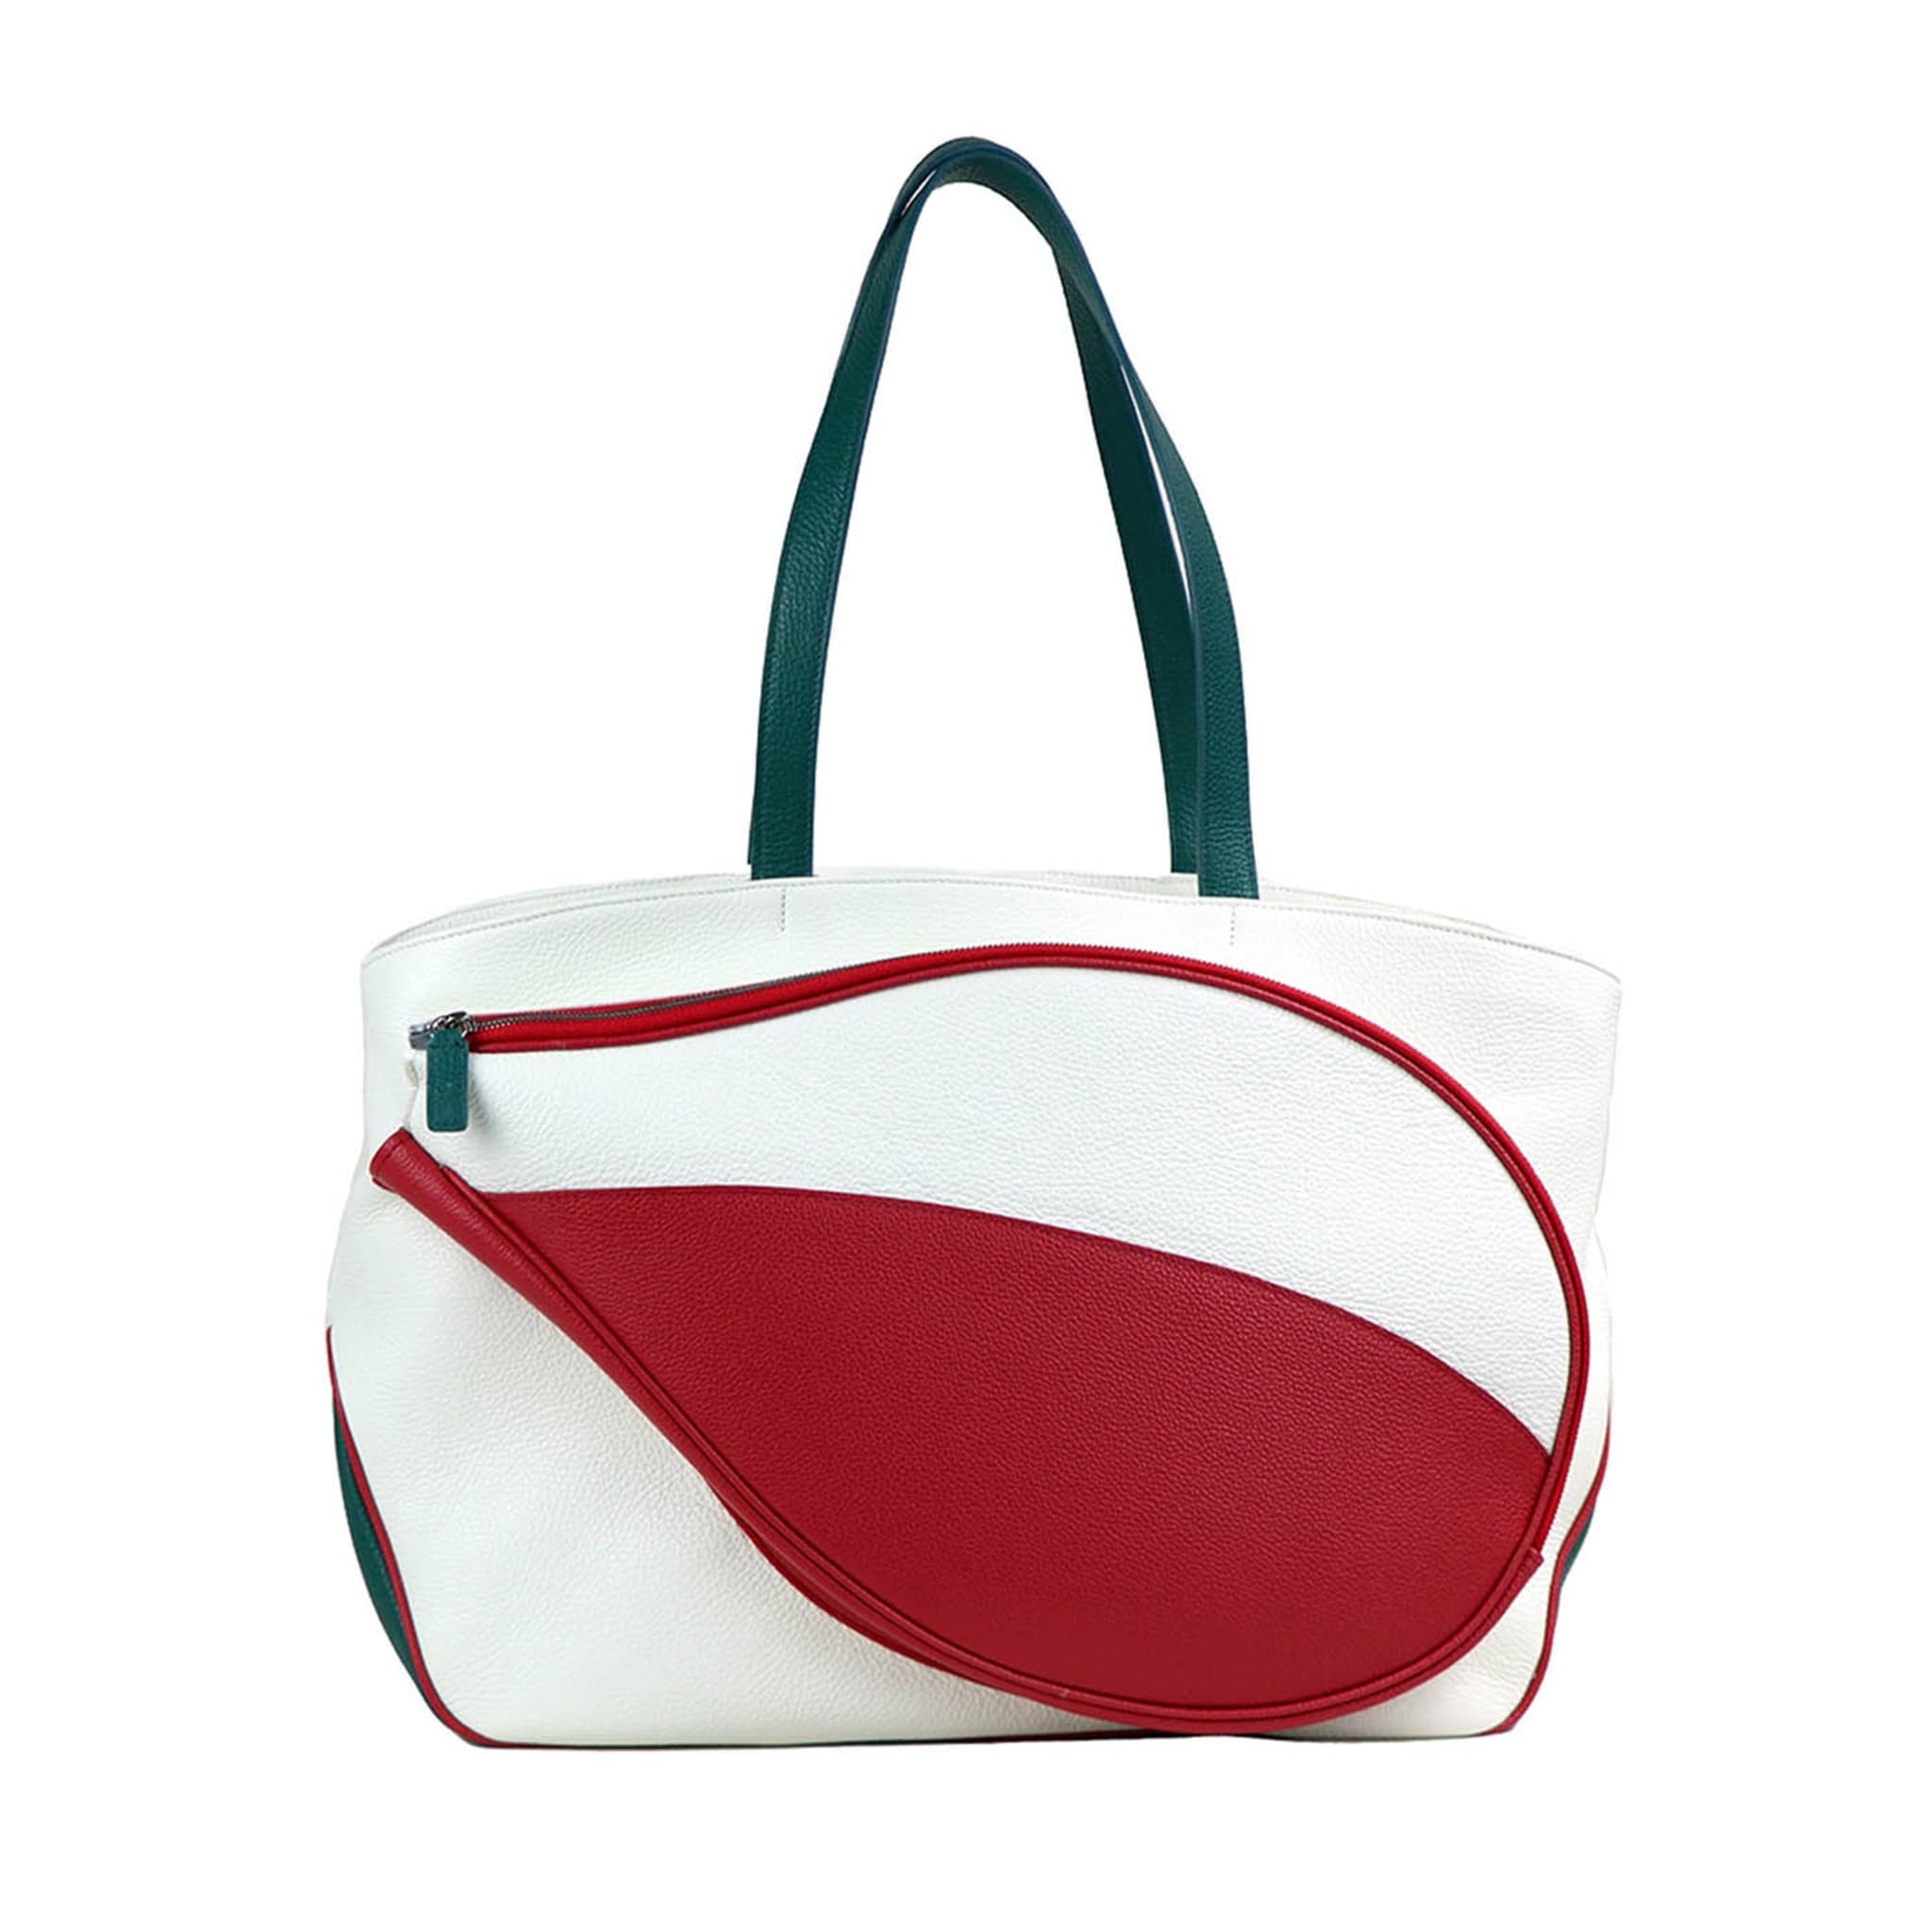 Bolsa de deporte blanca y roja con bolsillo en forma de raqueta de tenis - Vista principal